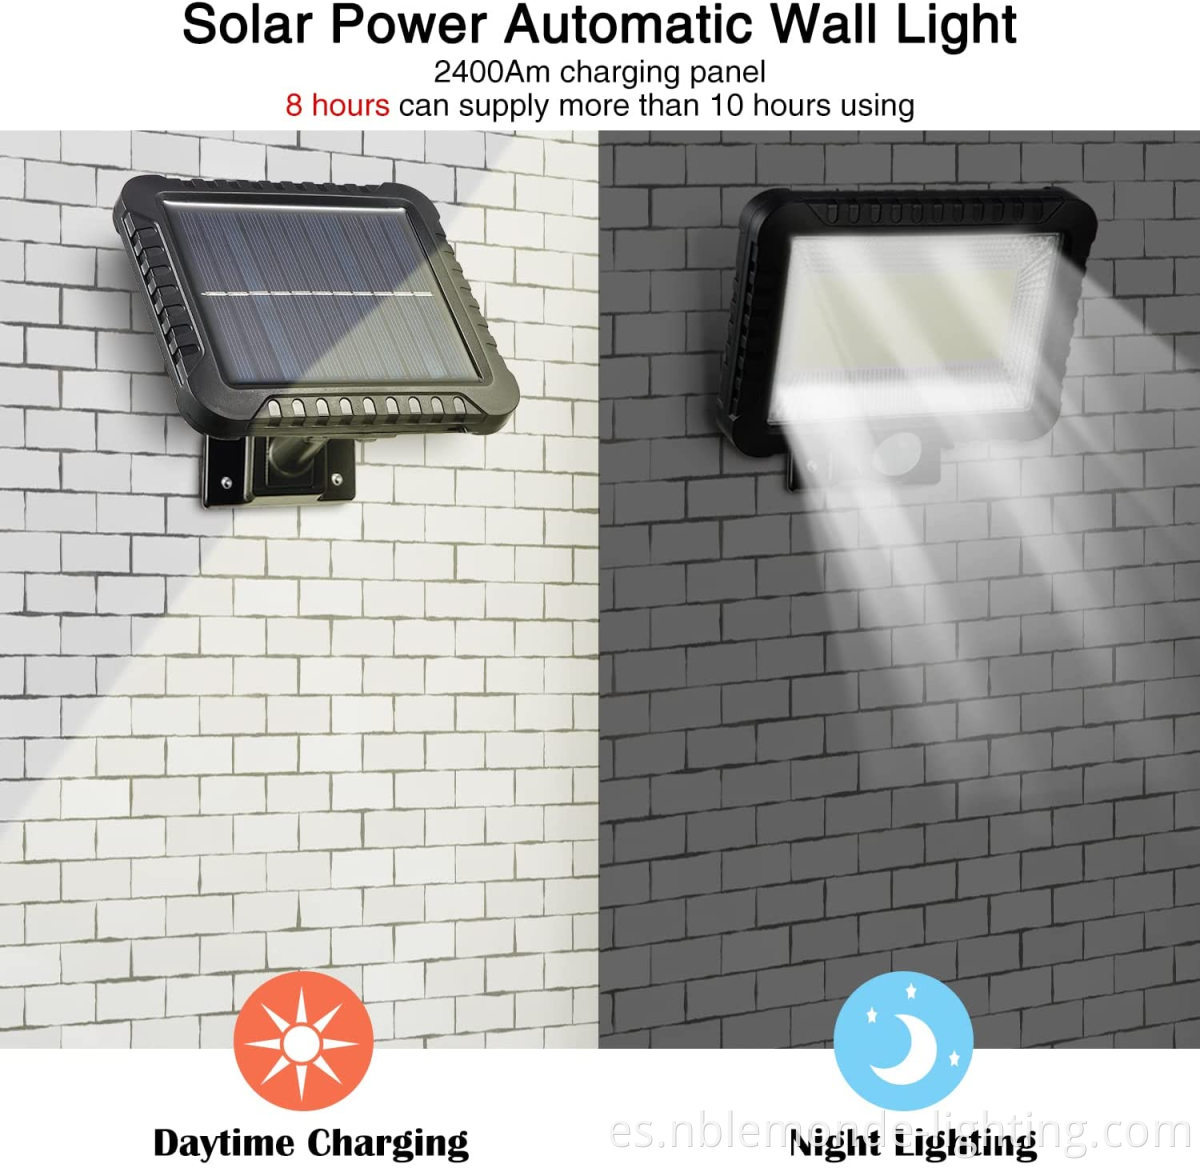 Outdoor Sun-Powered Motion-Sensing Wall Light